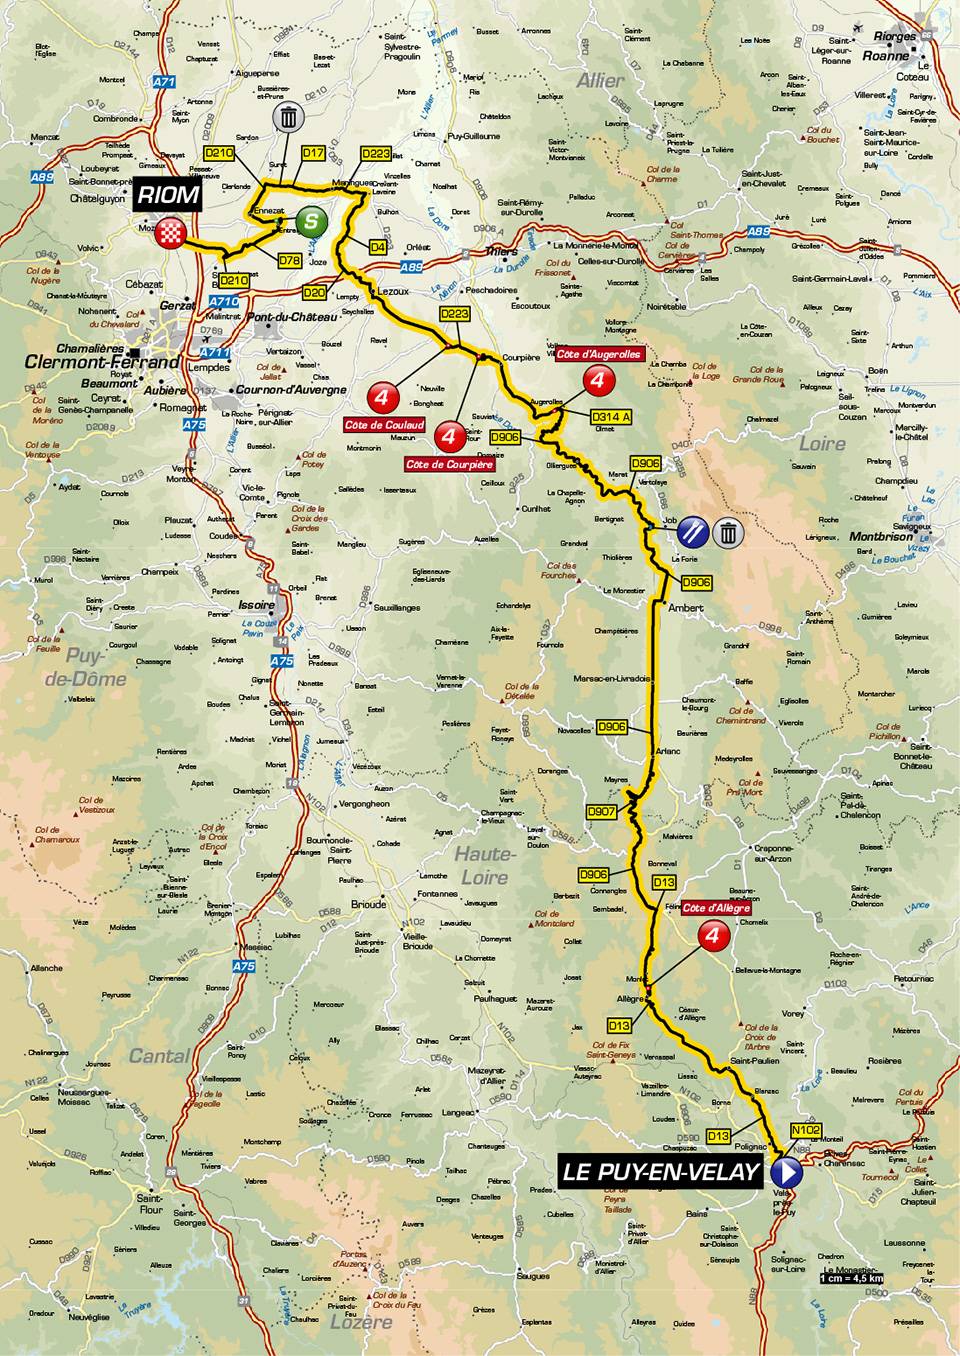 Streckenverlauf Critérium du Dauphiné 2019 - Etappe 3